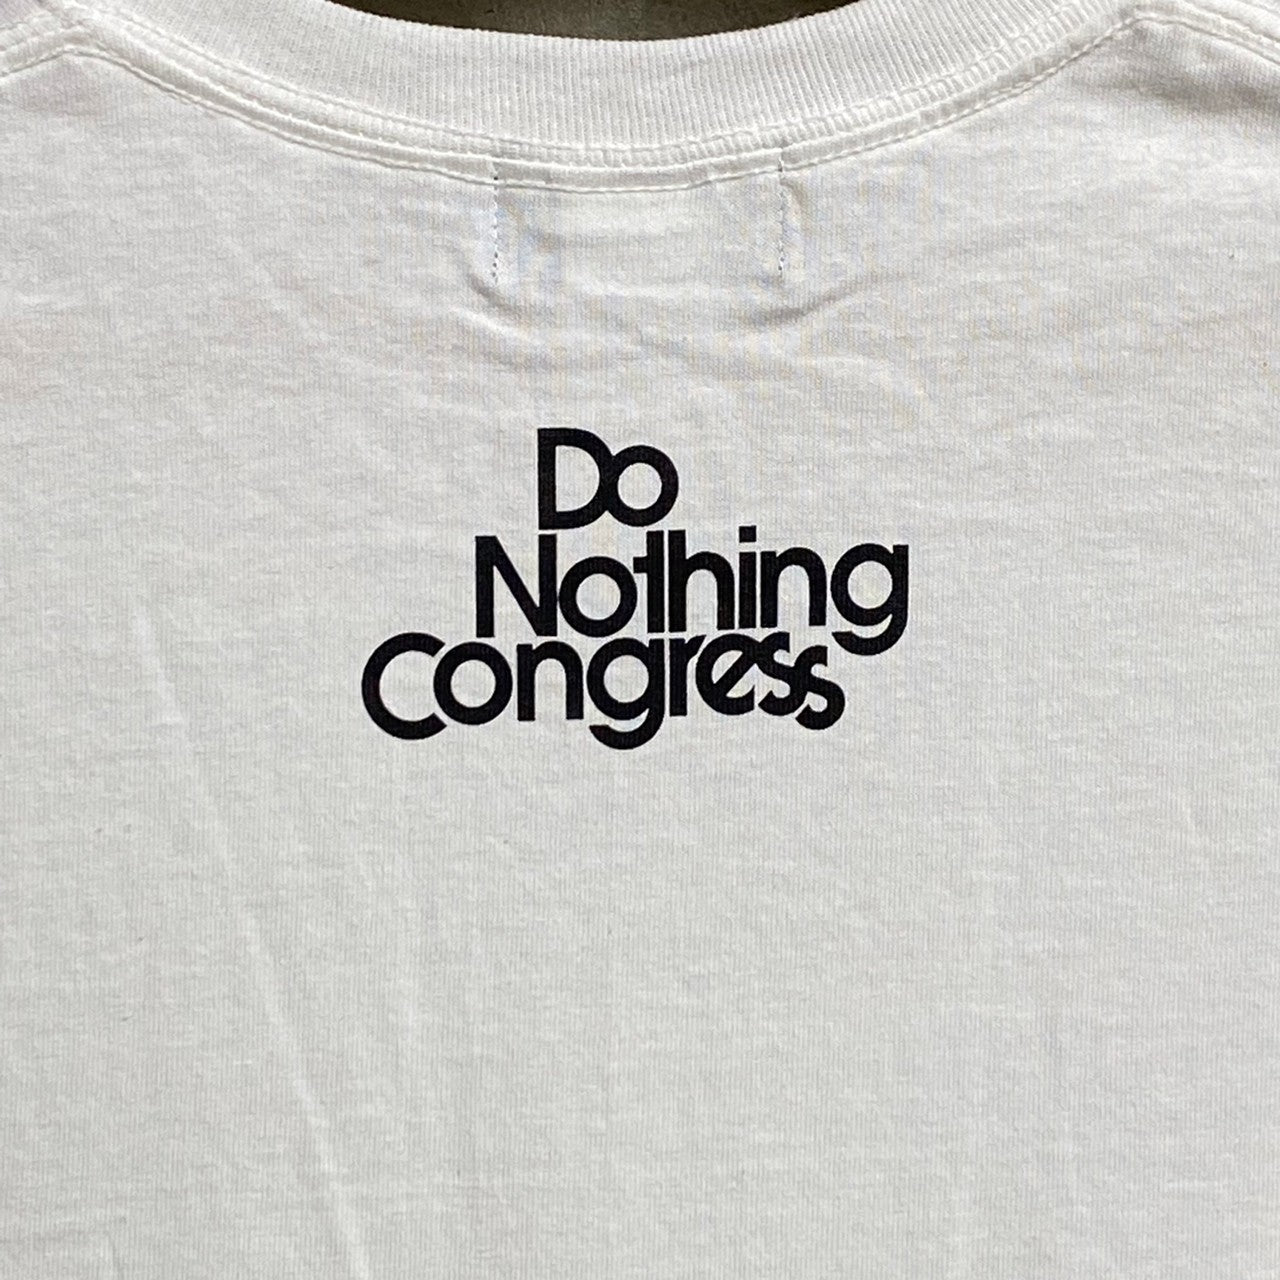 Do Nothing Congress " La Beaute est dans la rue " T-SHIRTS / Do Nothing Congress